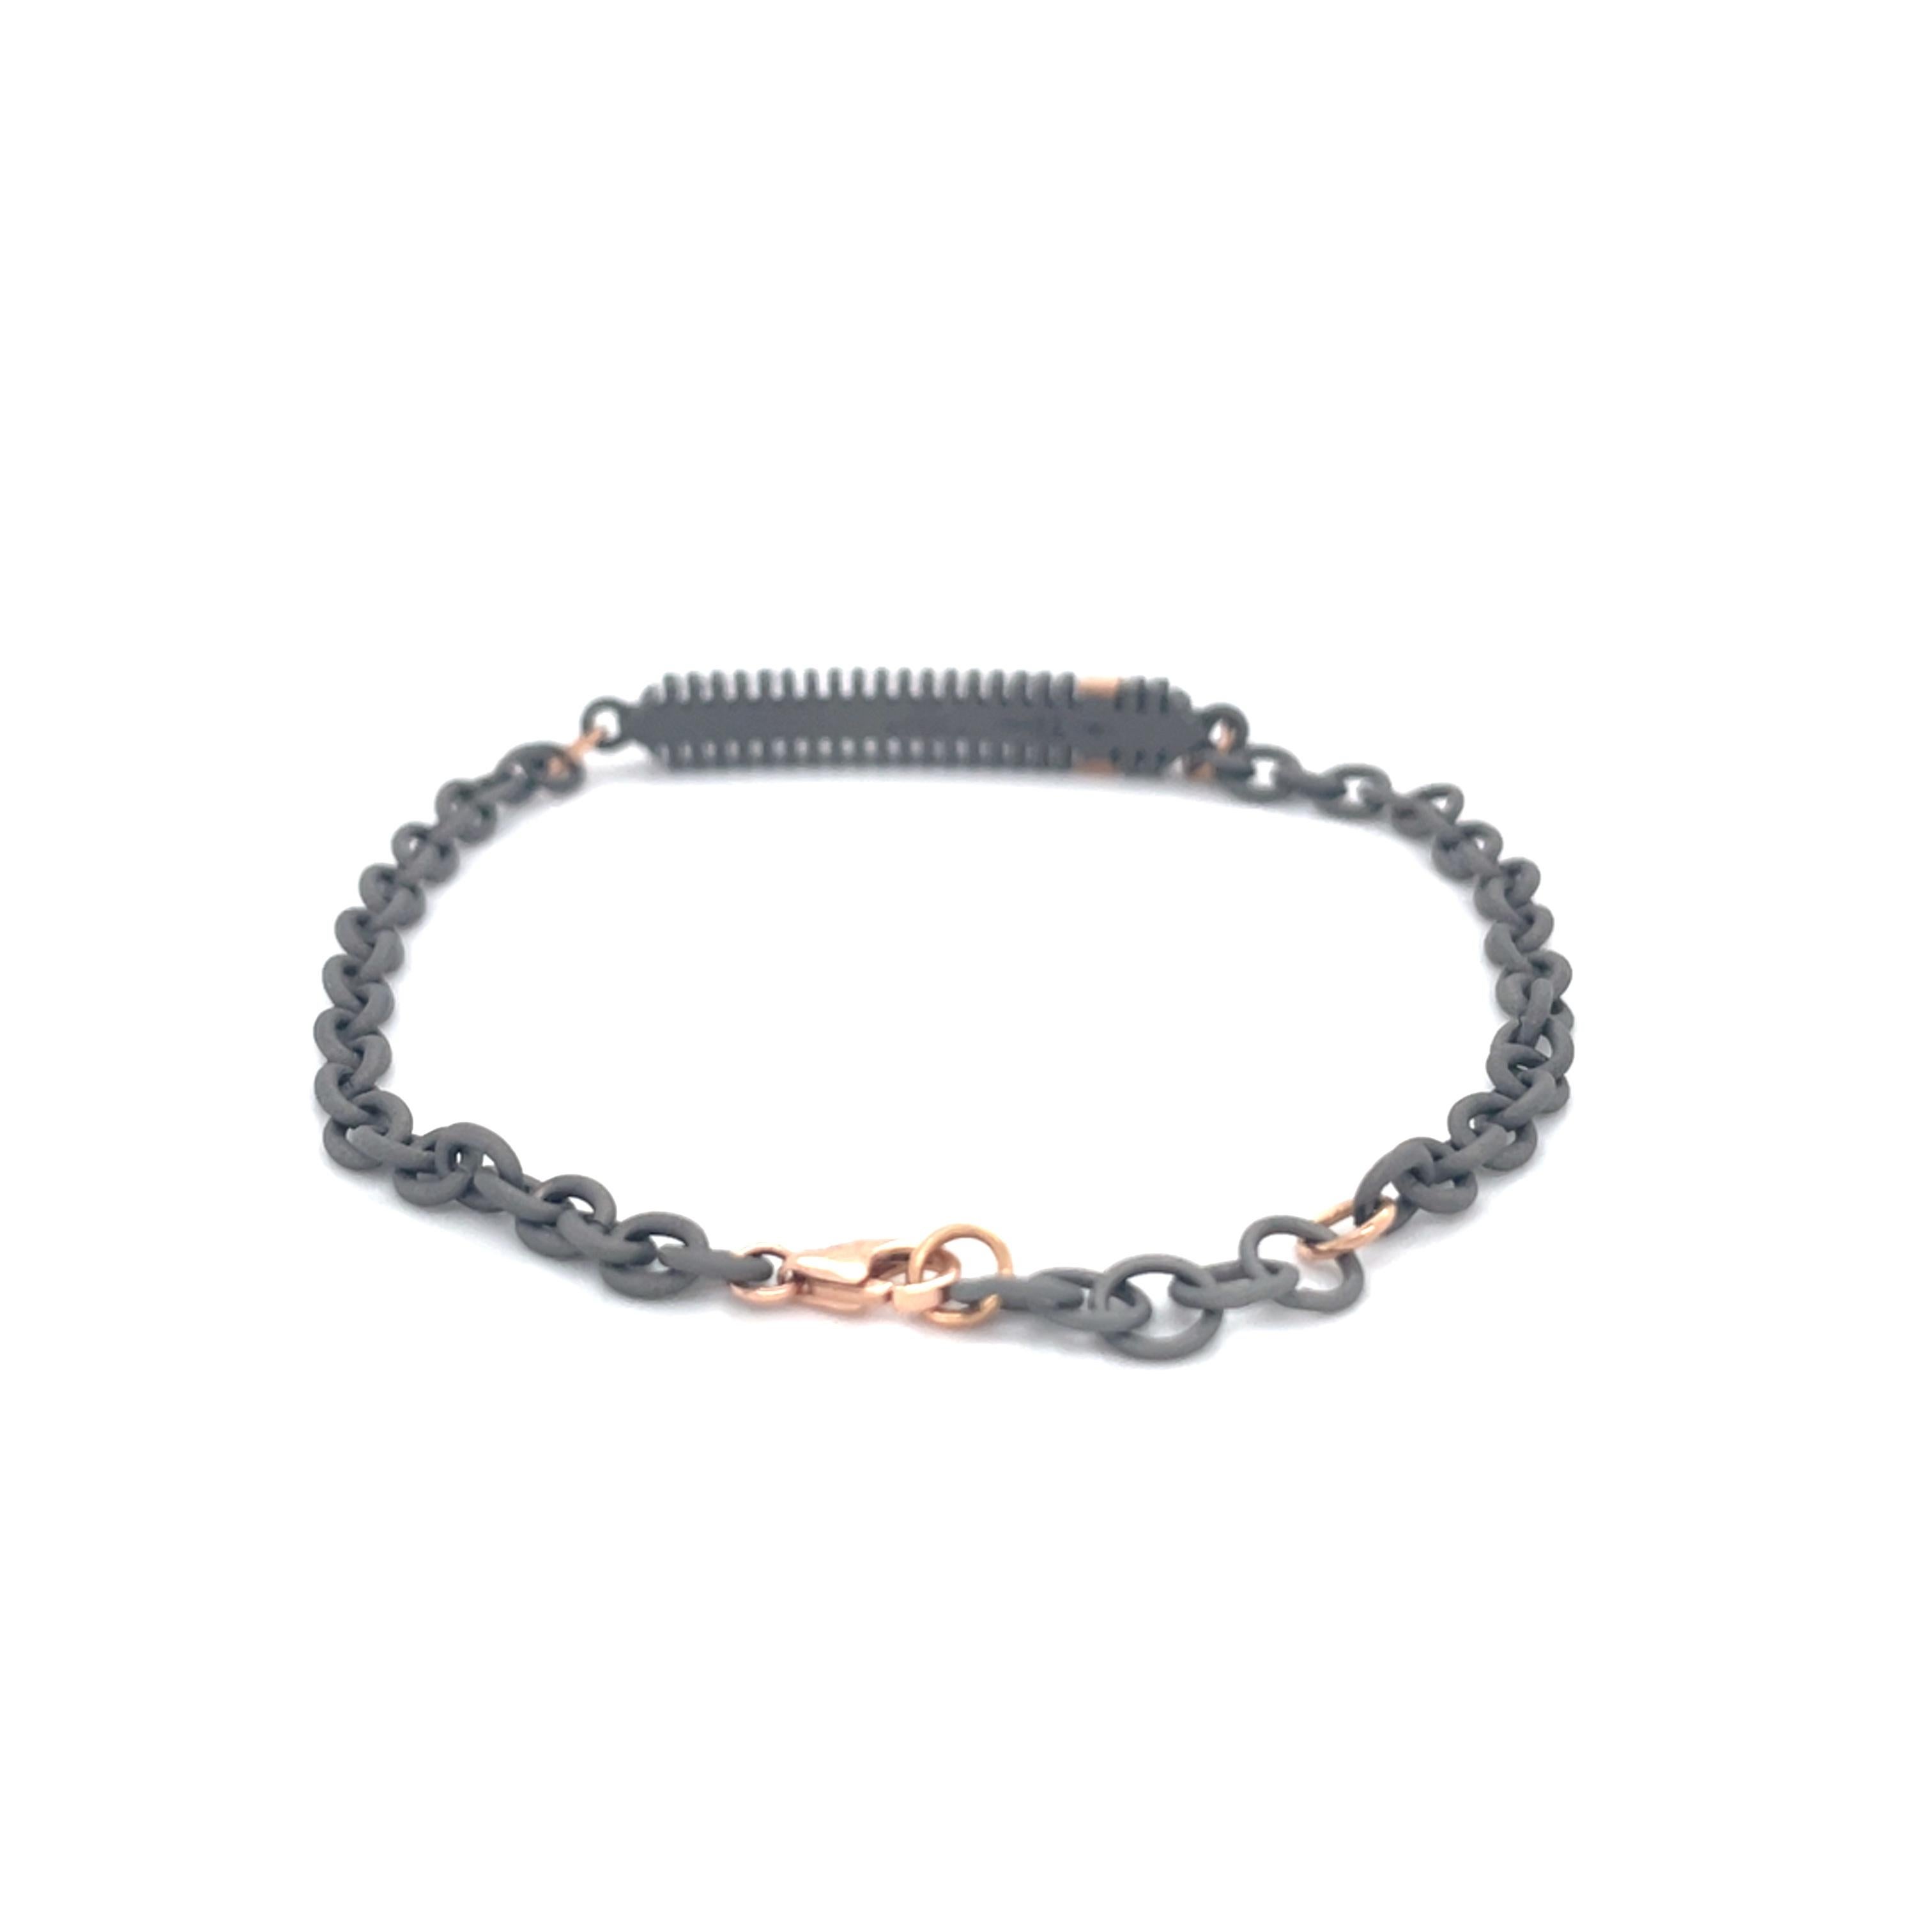 Ce bracelet en titane et or rose est issu de notre Collection S pour hommes. Ce bracelet en chaîne moderne est orné de 3 diamants ronds incolores naturels d'un total de 0,03 carat placés sur des détails en or jaune 18K. Le bracelet mesure 20 cm de